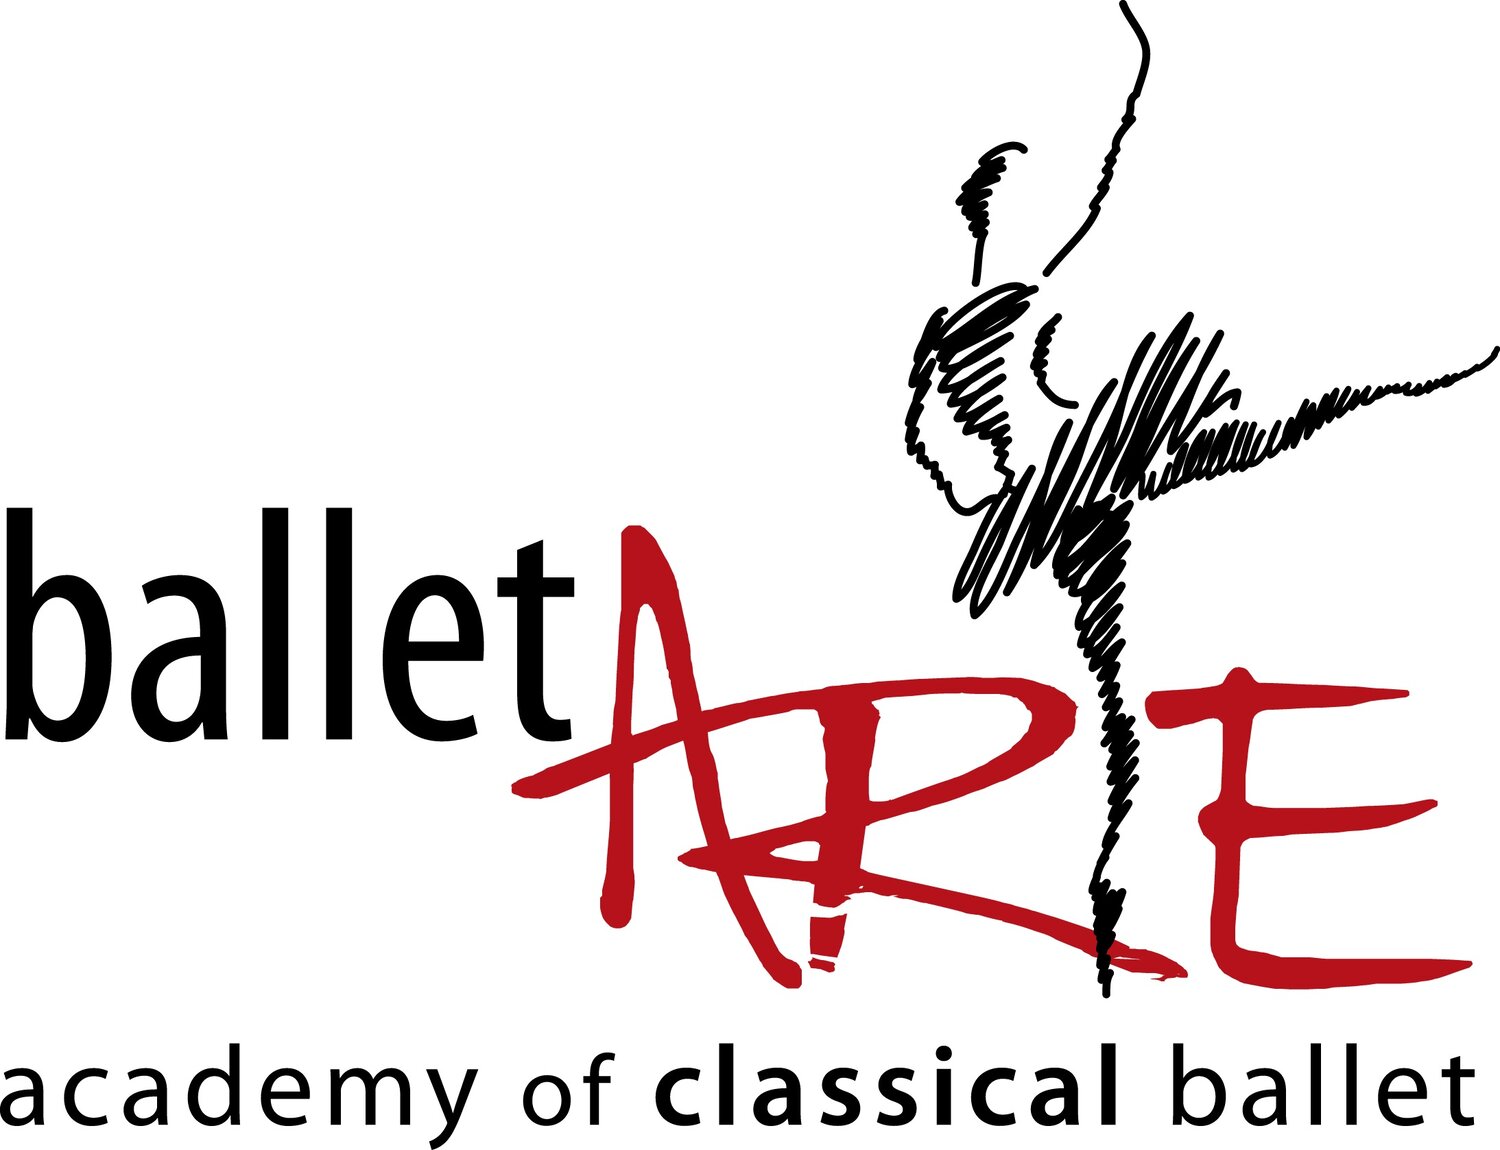 Ballet Arte